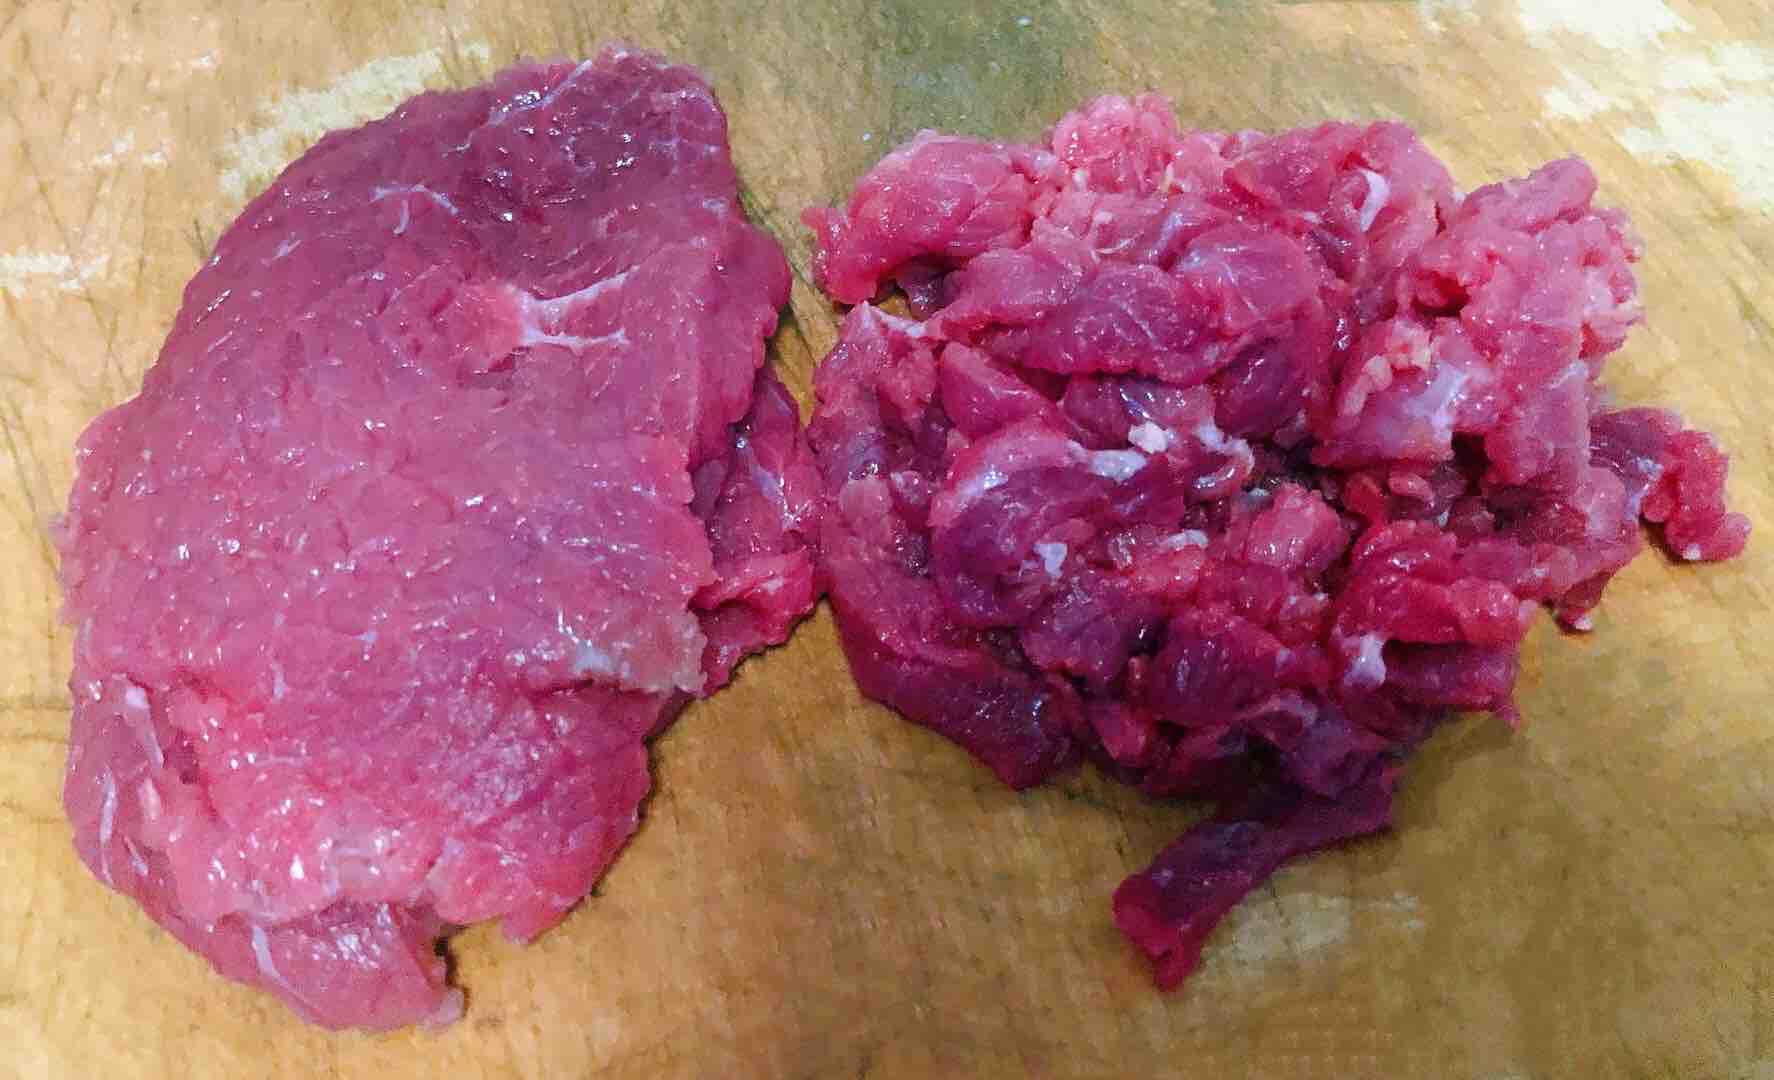 Stir-fried Beef with Seasonal Vegetables recipe